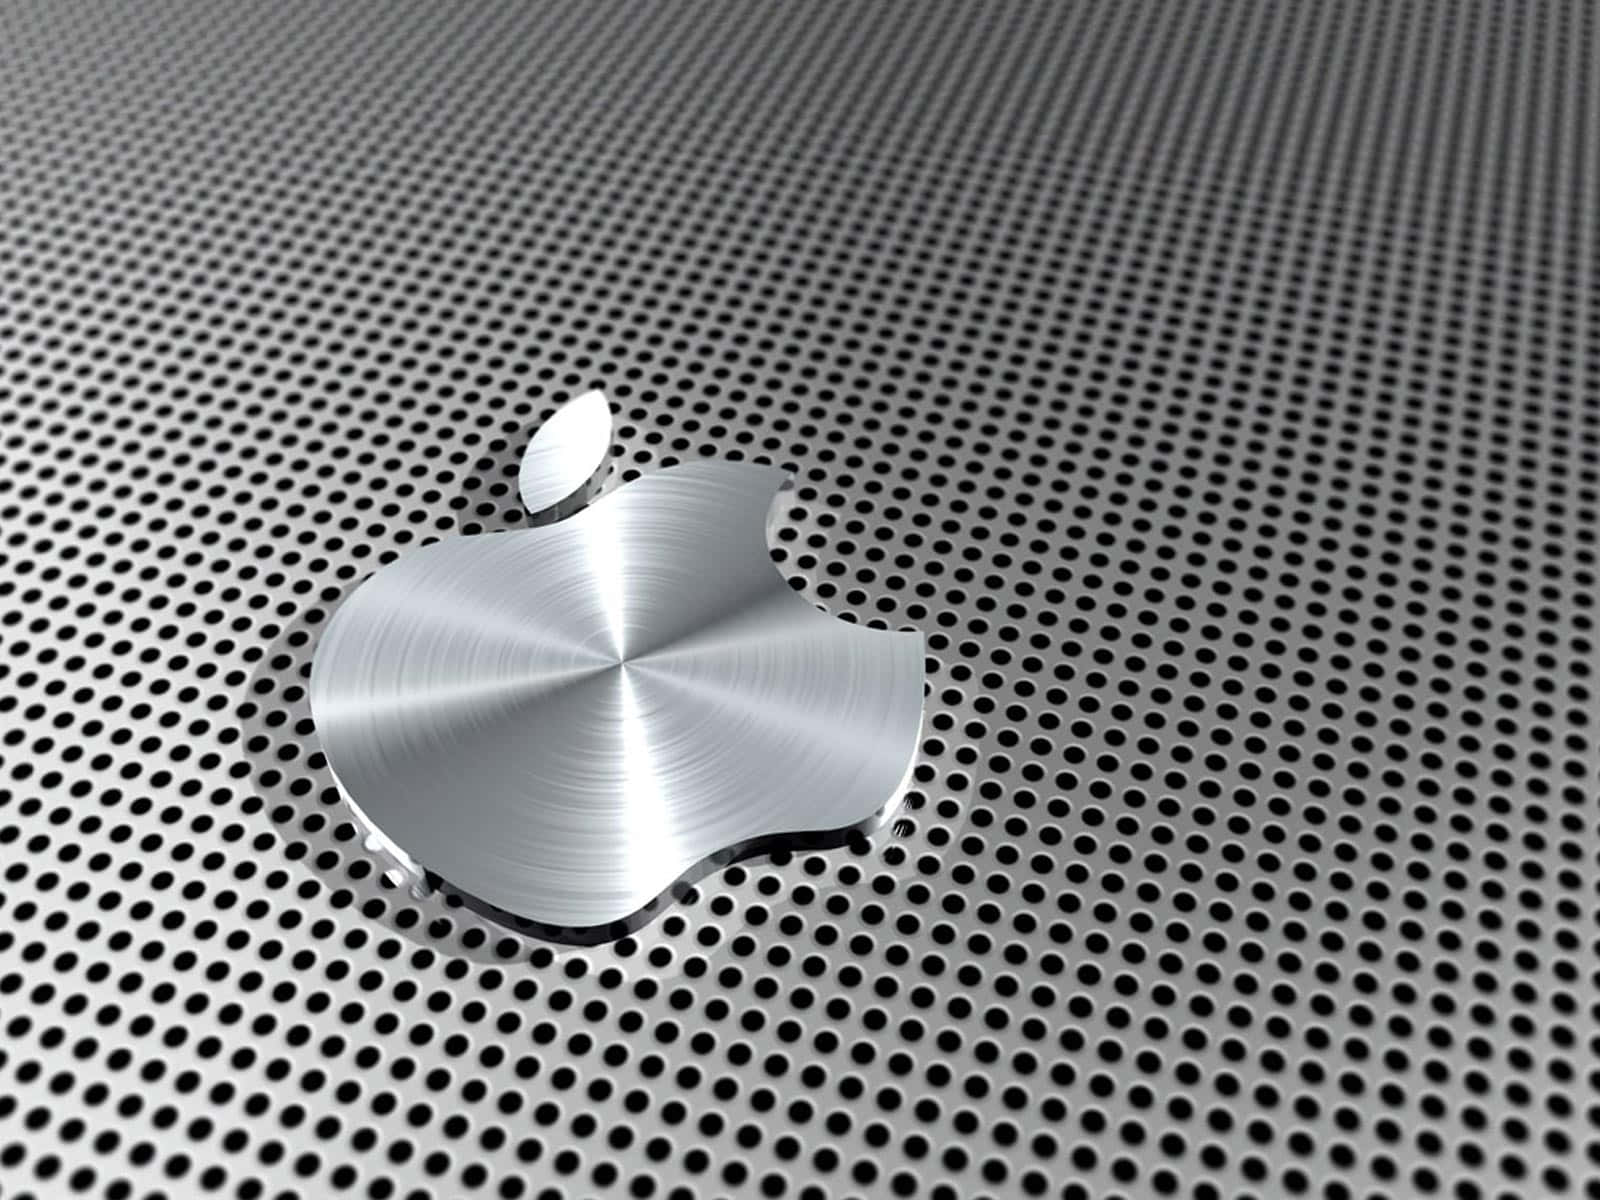 Onovo Laptop Da Apple: Um Design Elegante E Moderno Combinando Elegância E Função. Papel de Parede